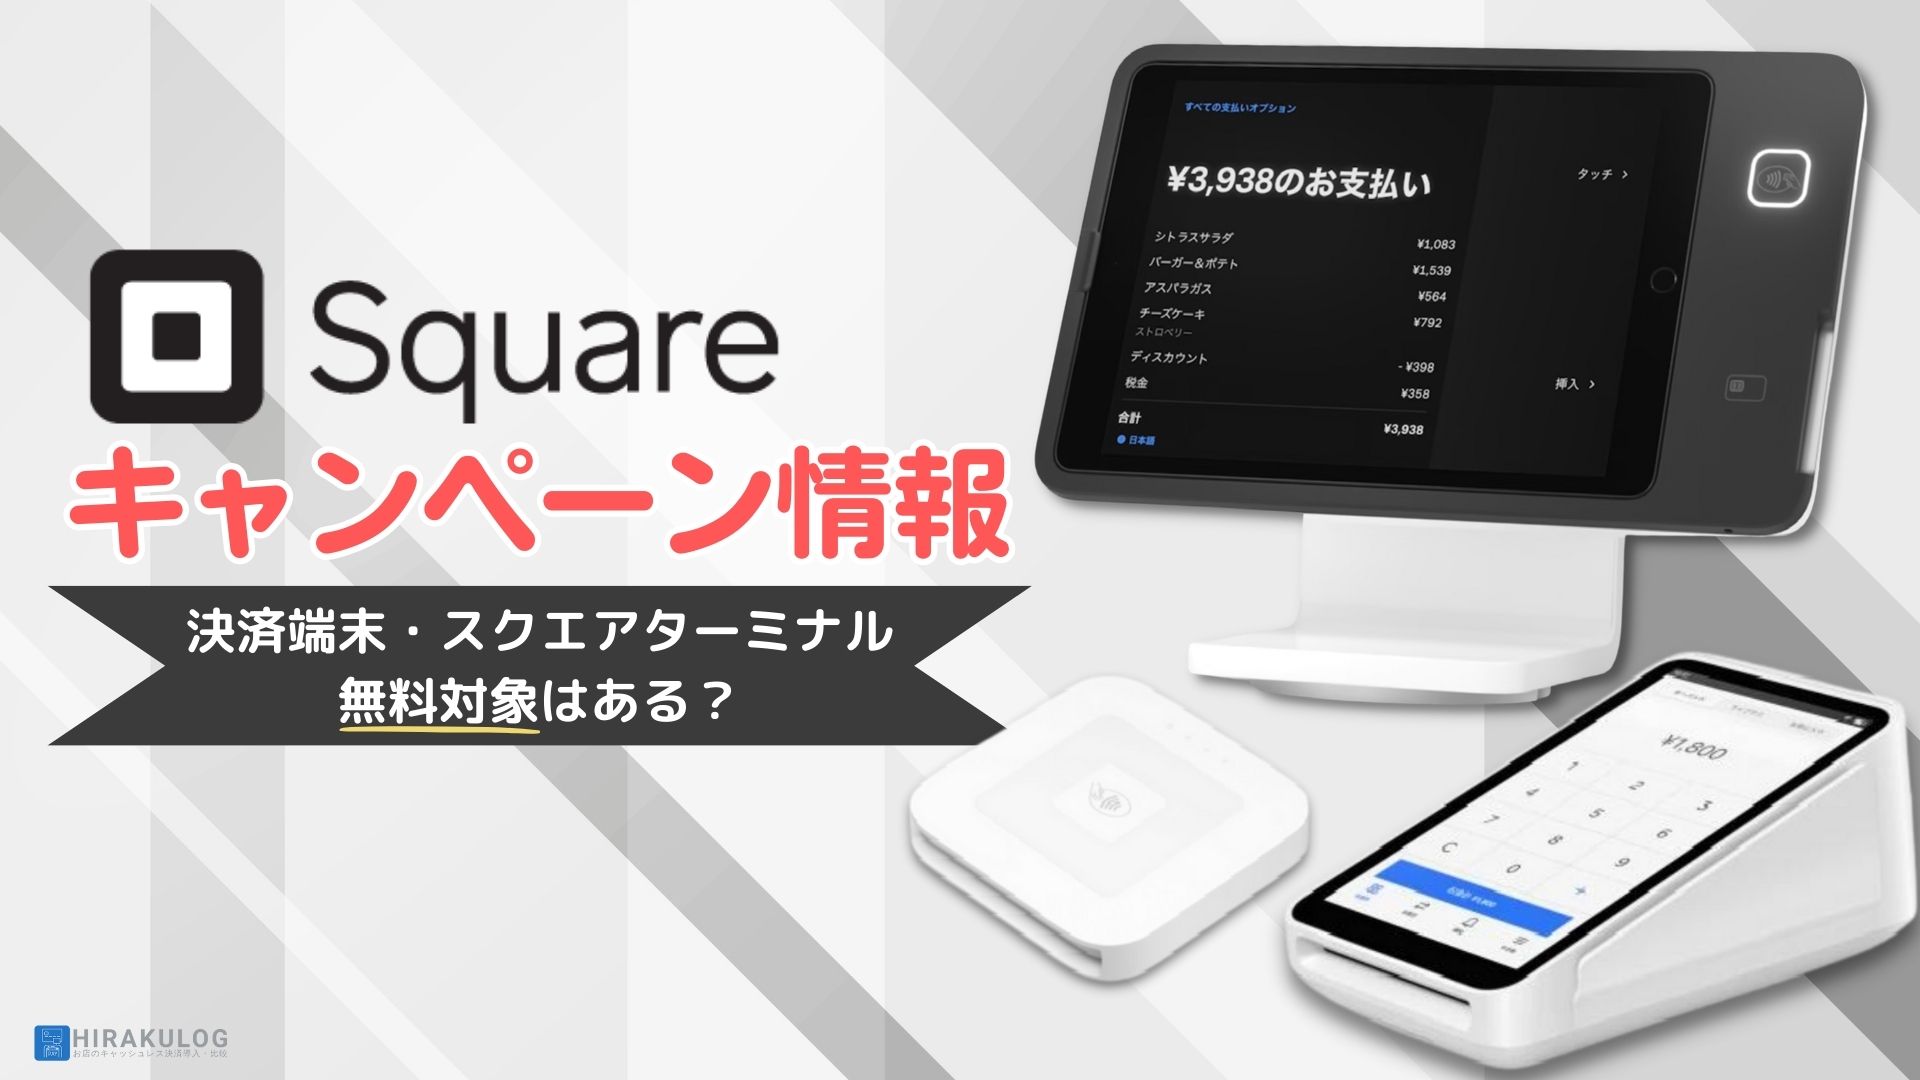 Square ターミナル スクエア カード決済端末 - PC/タブレット